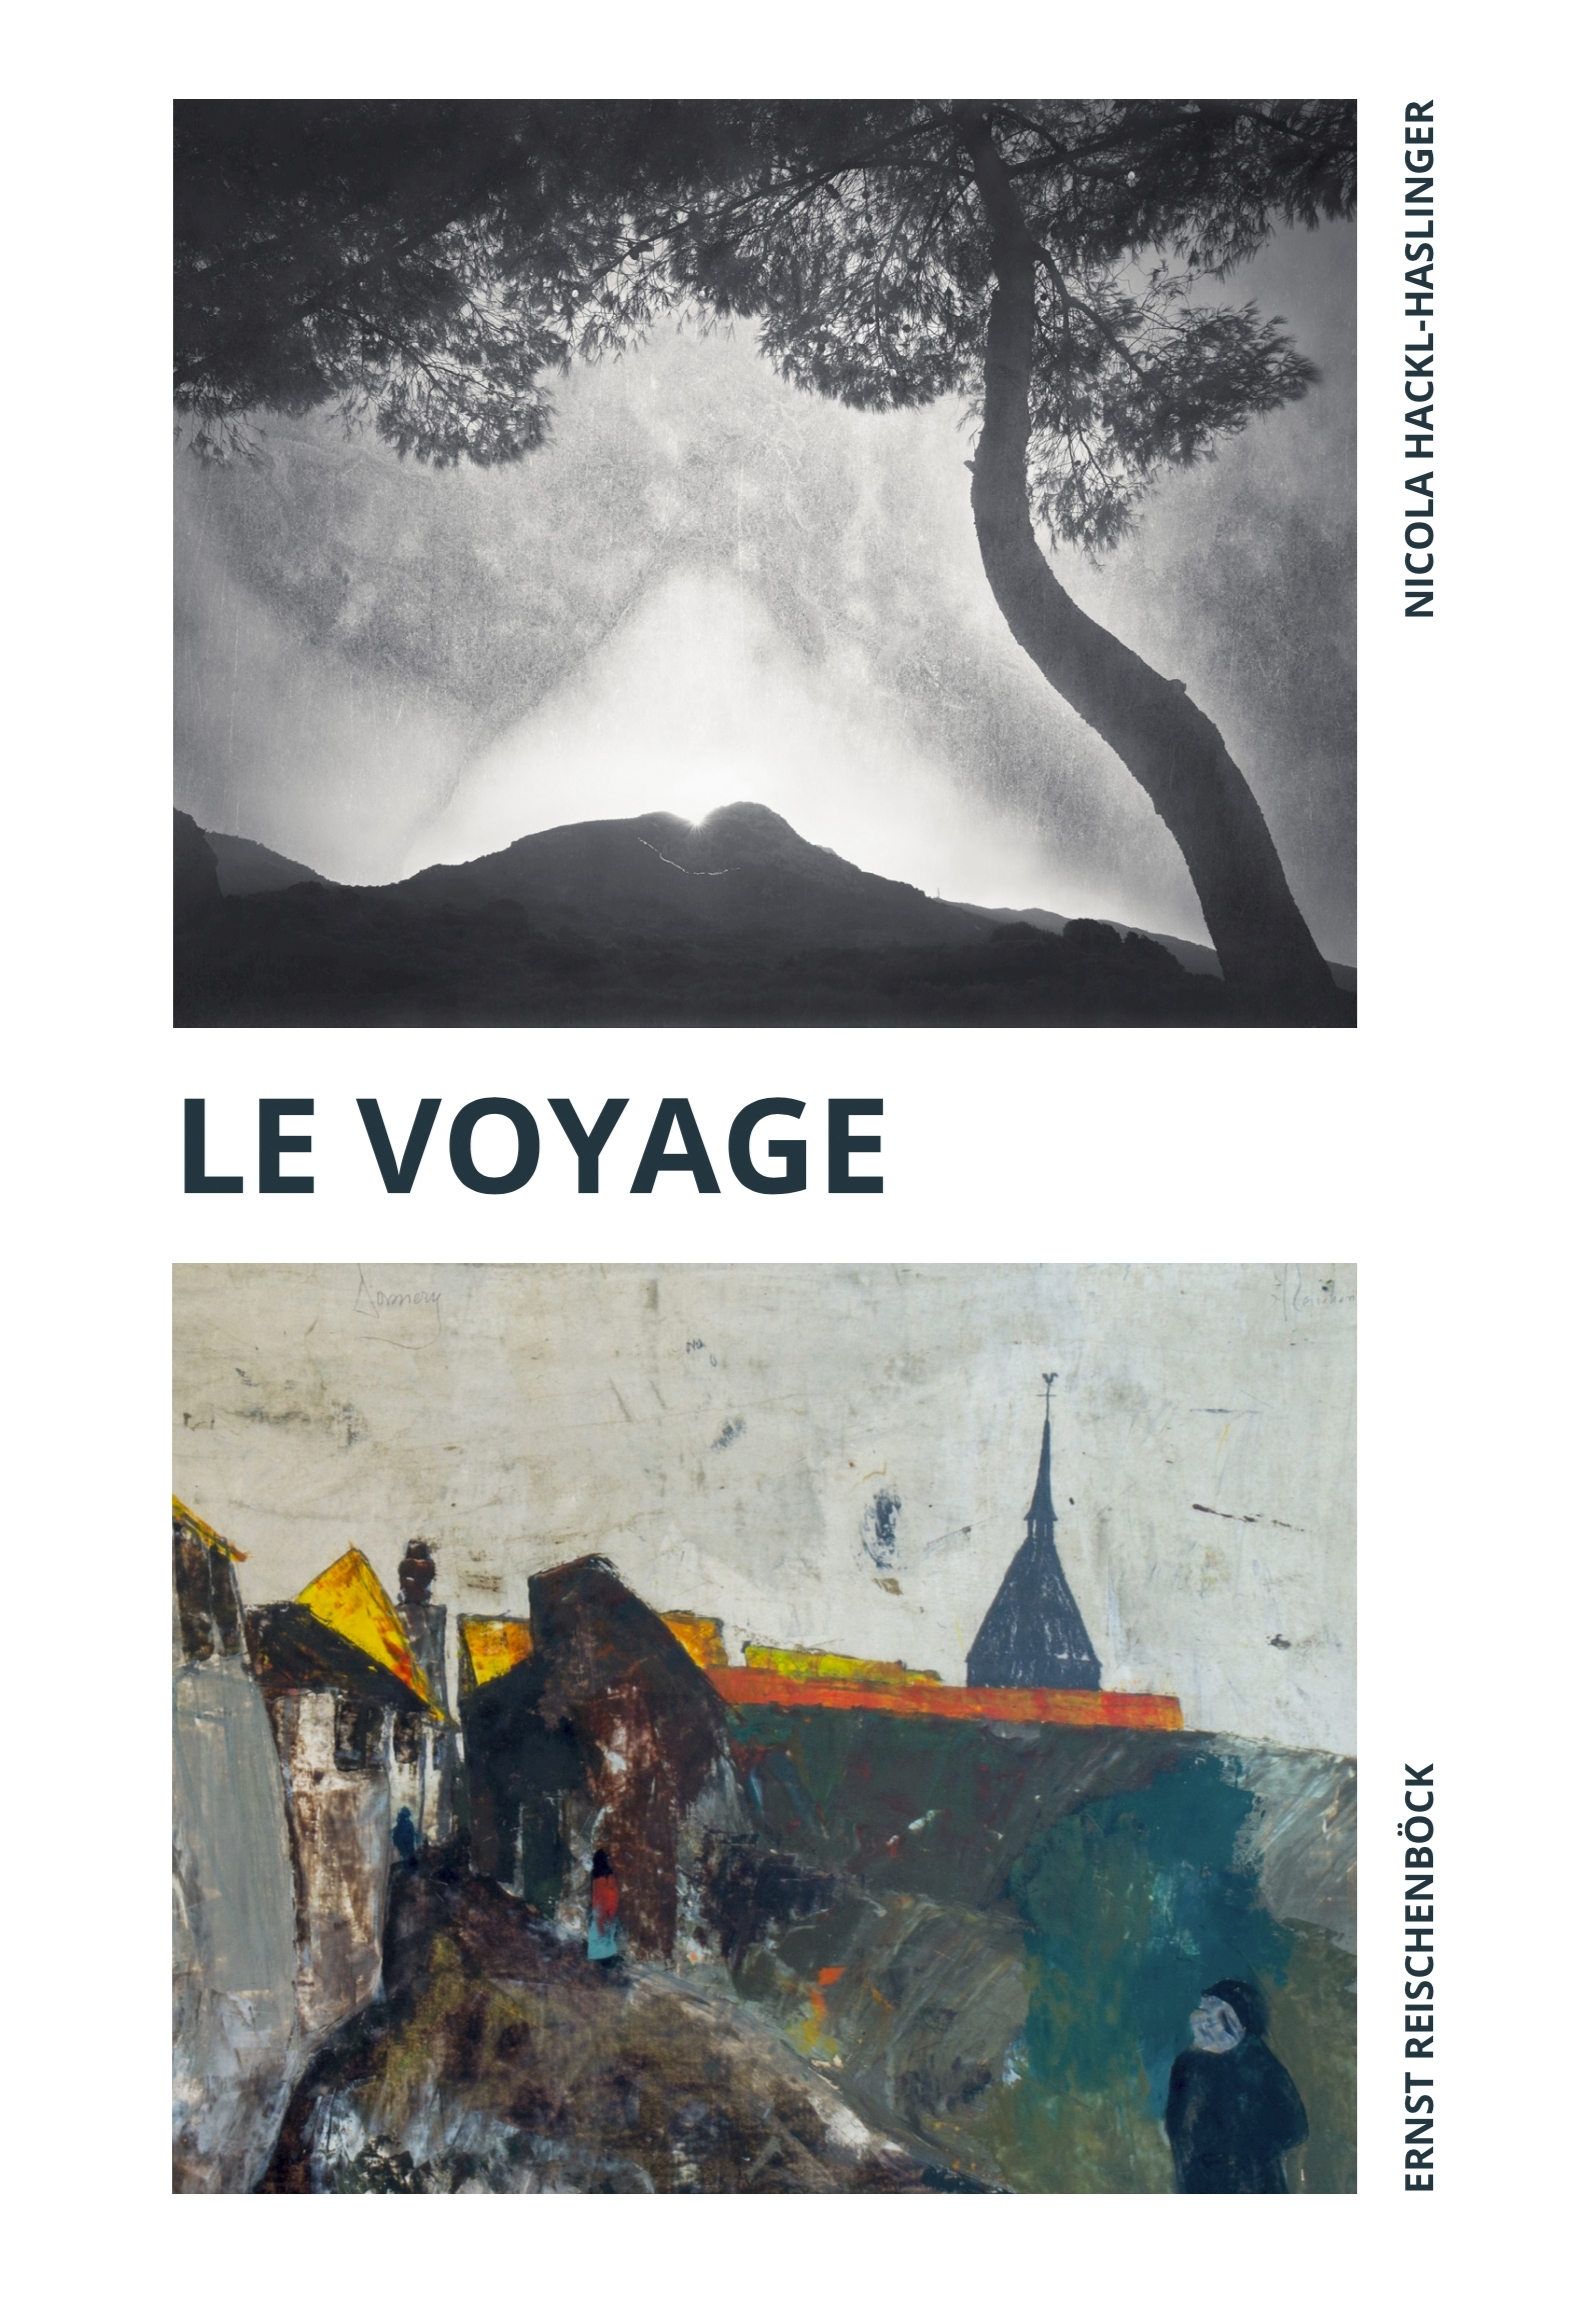 Exhibition “Le Voyage” Invitation